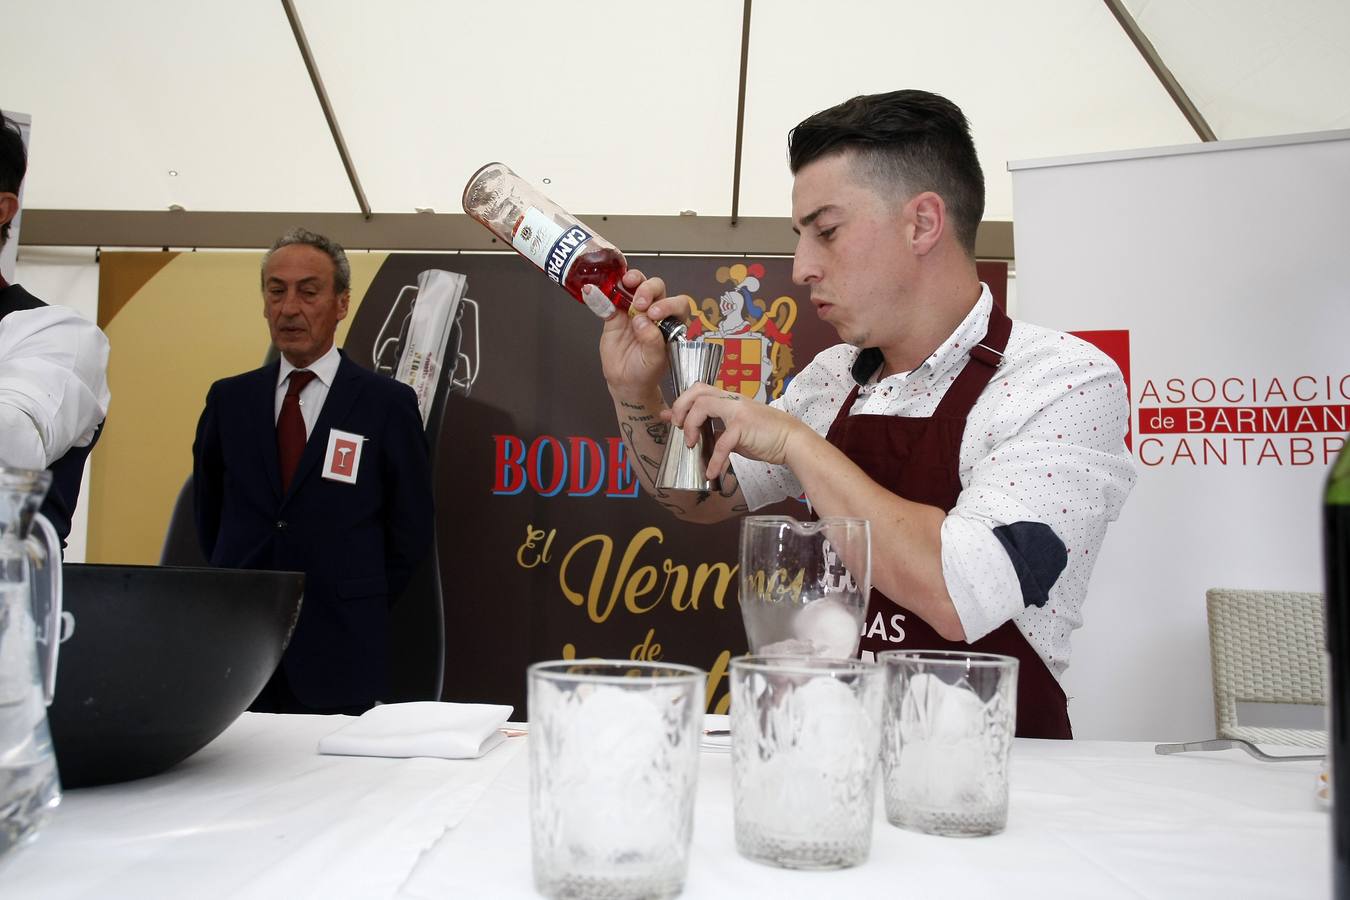 El joven del 'Clandestino Coctelería' gana el III Concurso Nacional de Coctelería con Vermut, celebrado en Torrelavega y organizado por Bodegas Igarmi